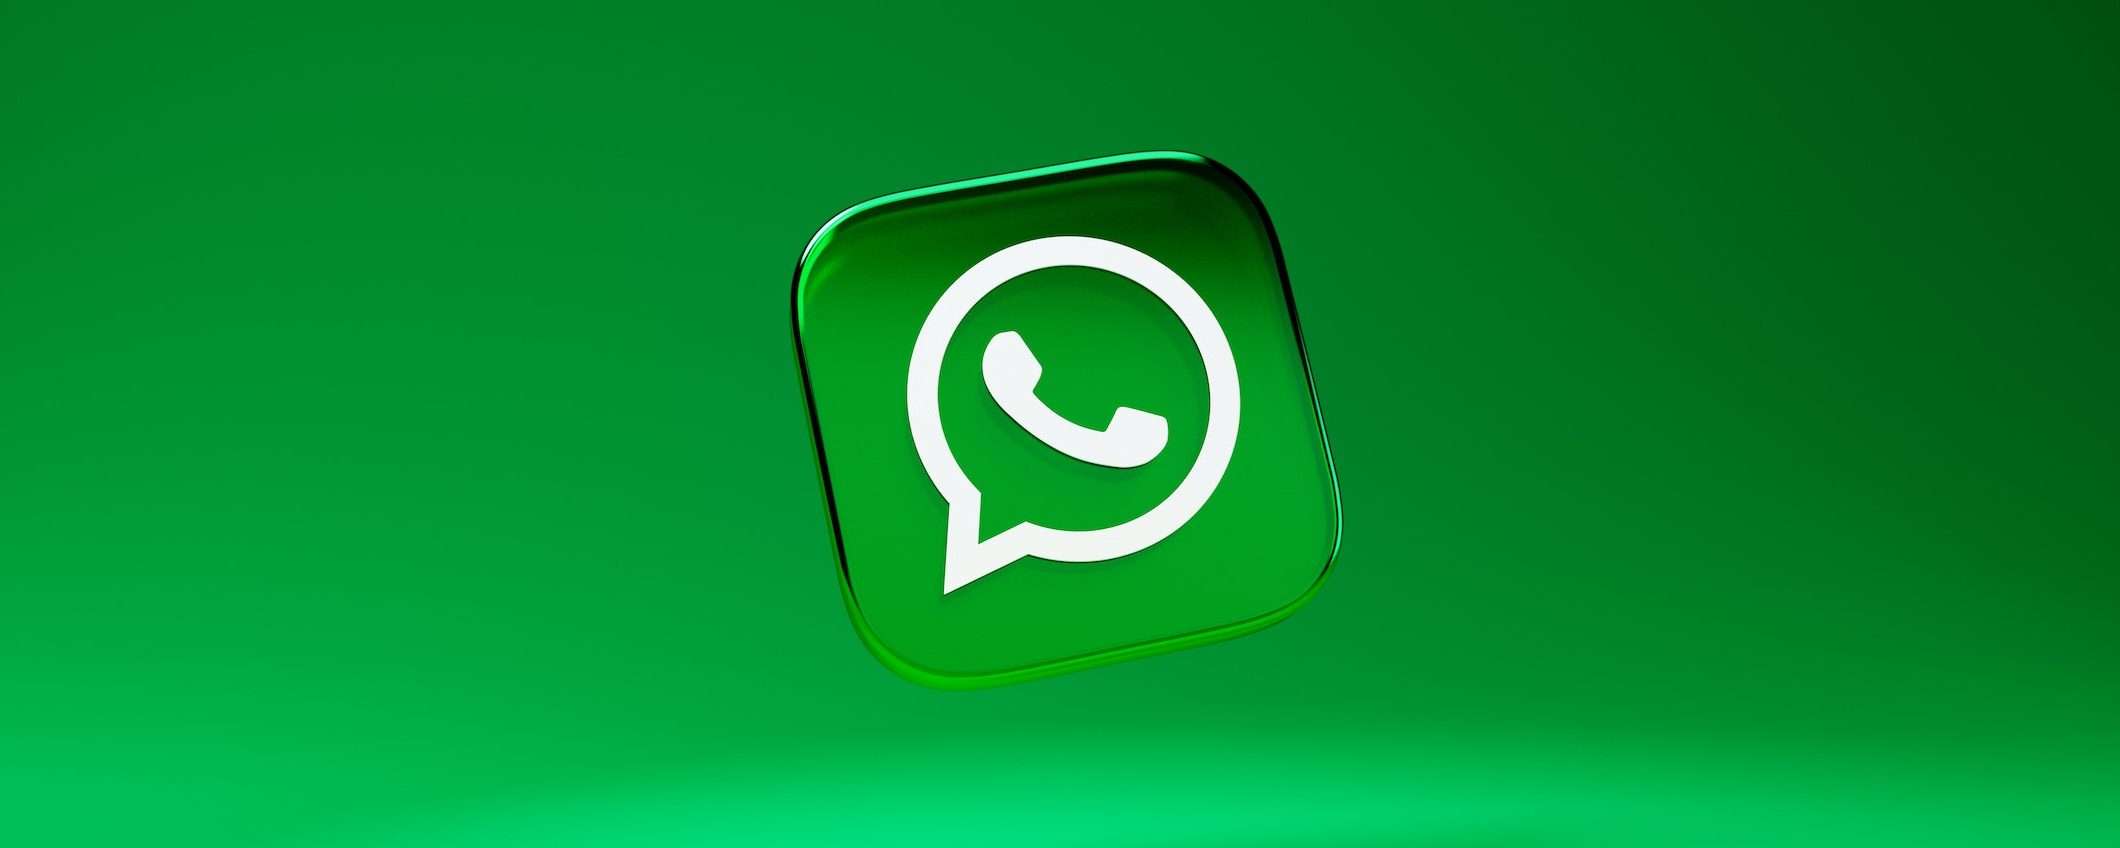 WhatsApp: note vocali negli aggiornamenti di stato